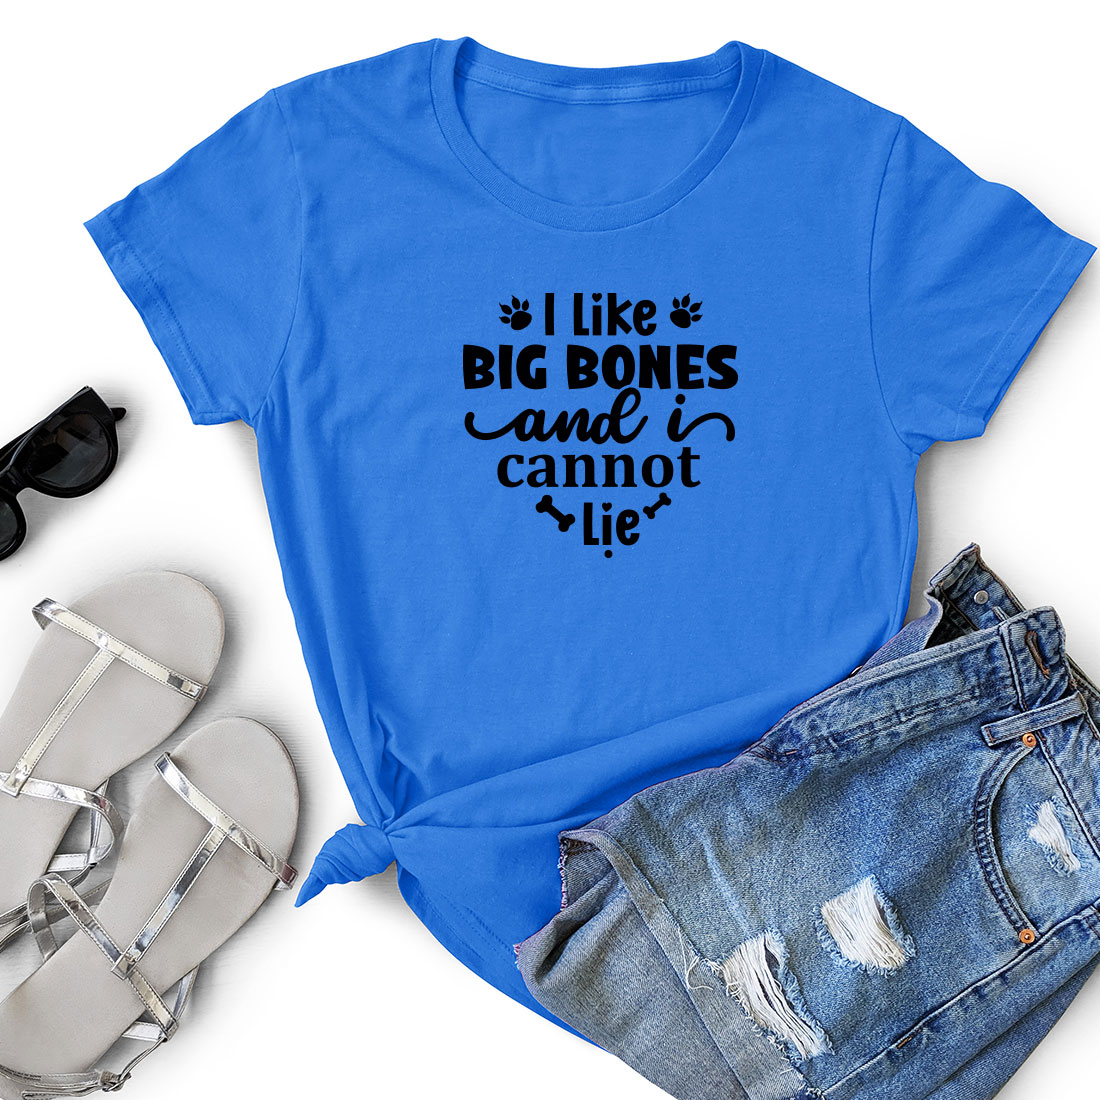 T - shirt that says i like big bones and i cannot't lie.